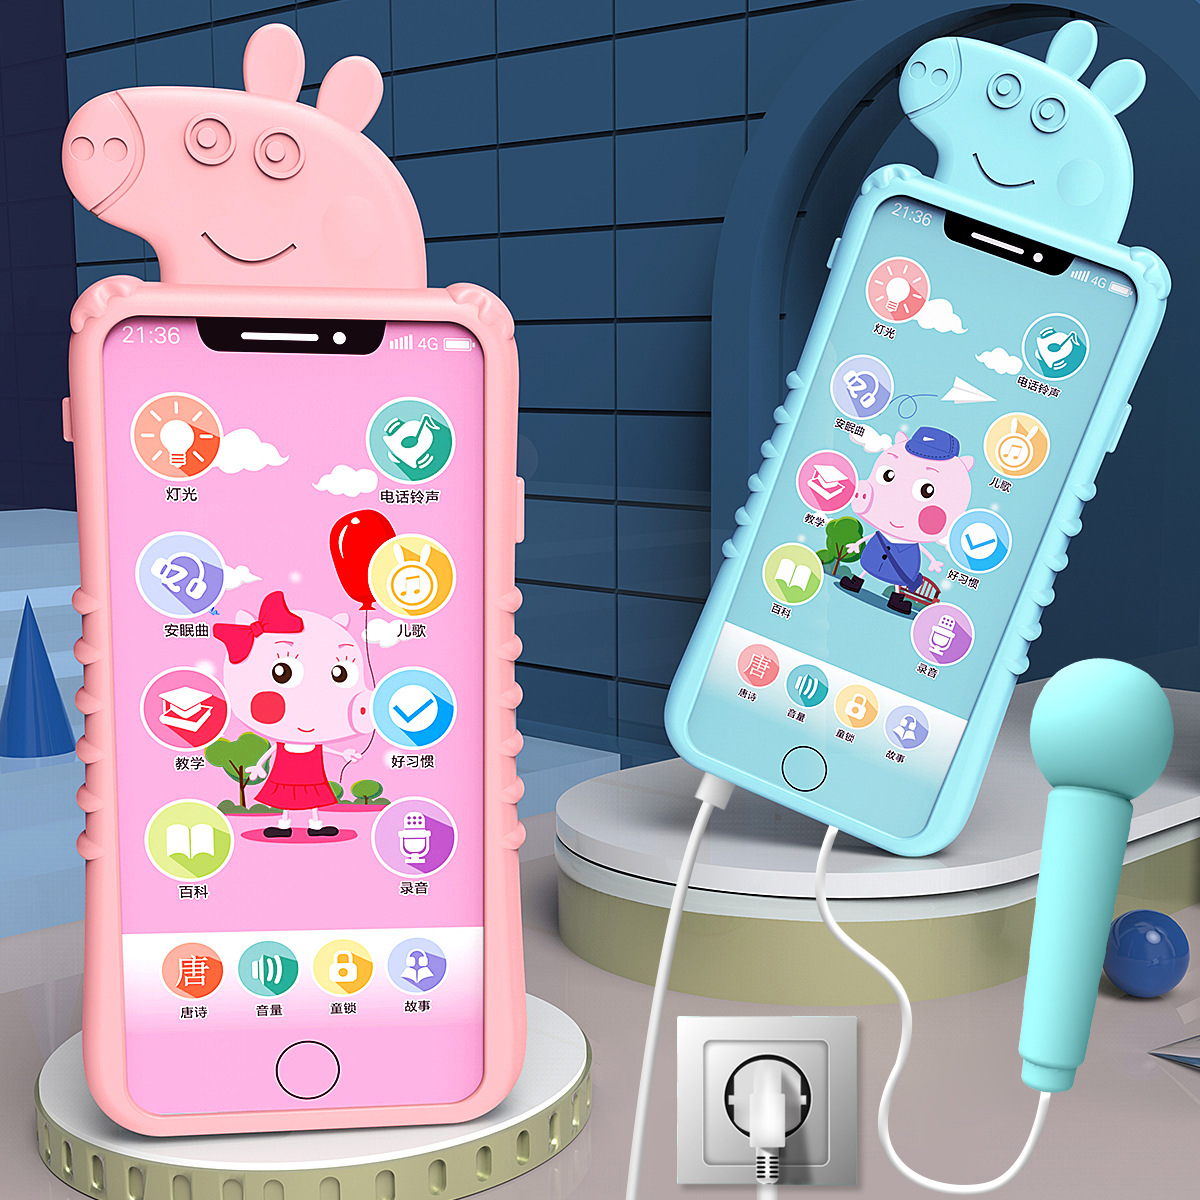 婴儿早教故事充电仿真玩具手机 可咬触屏智能仿真音乐电话0-3玩具